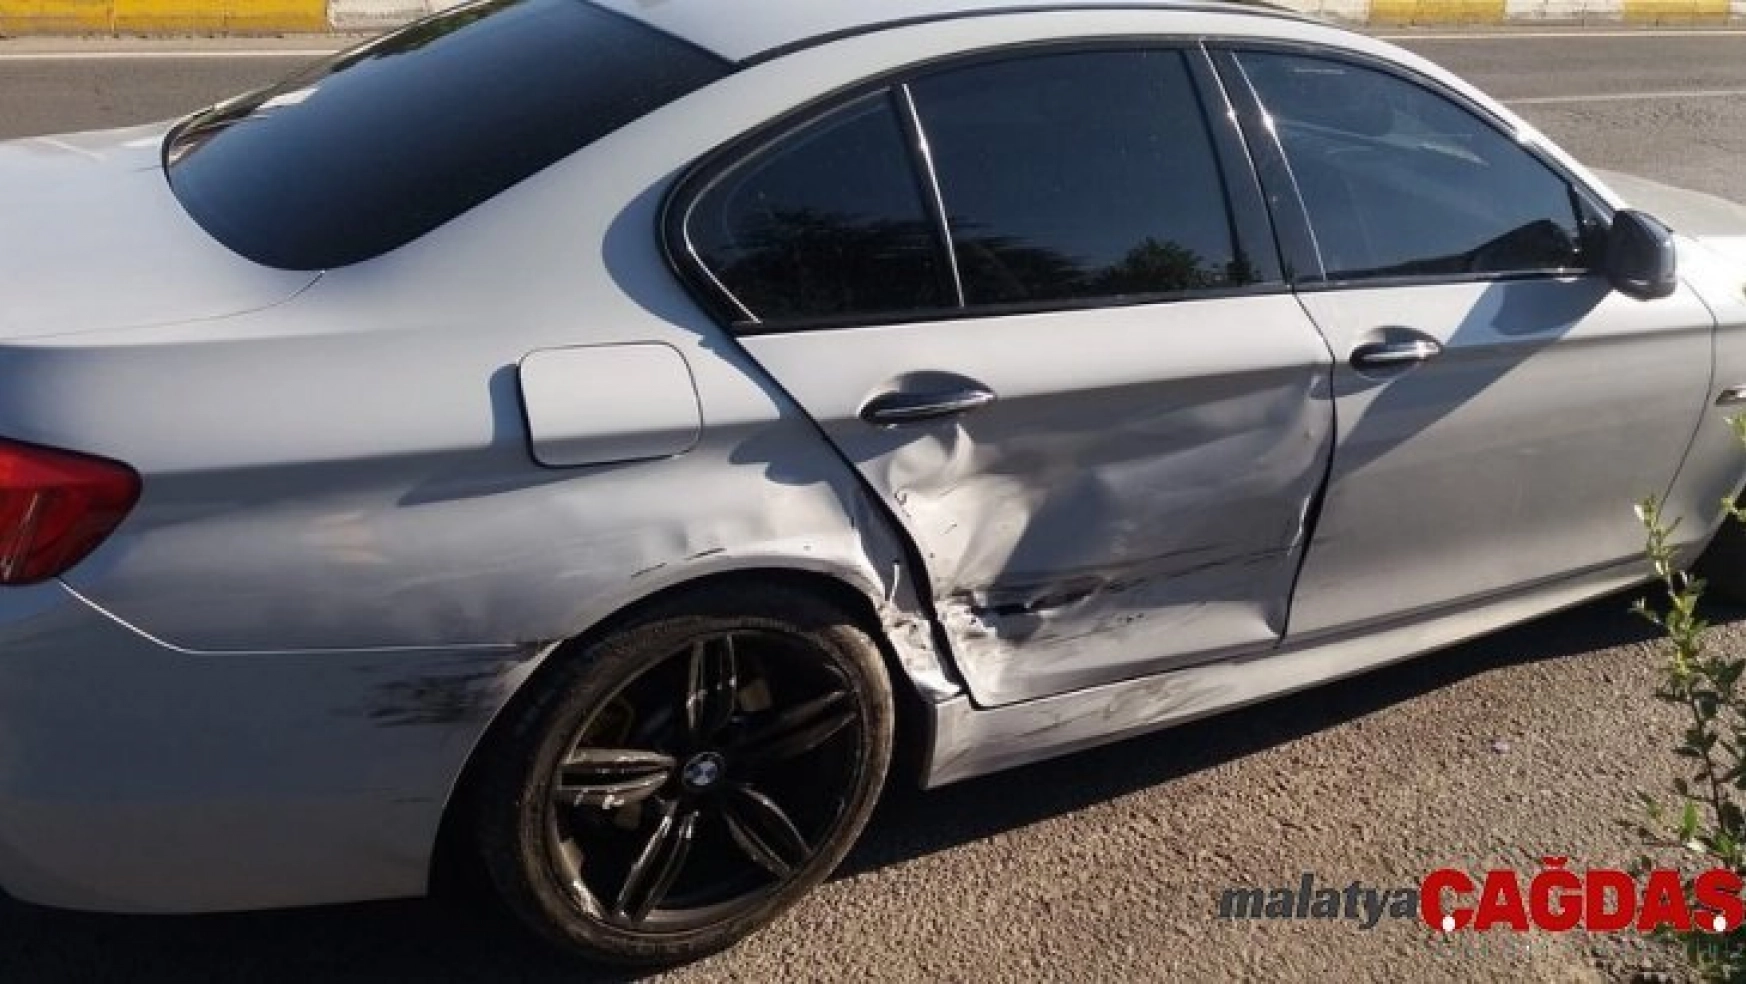 Bingöl'de trafik kazası 1 yaralı